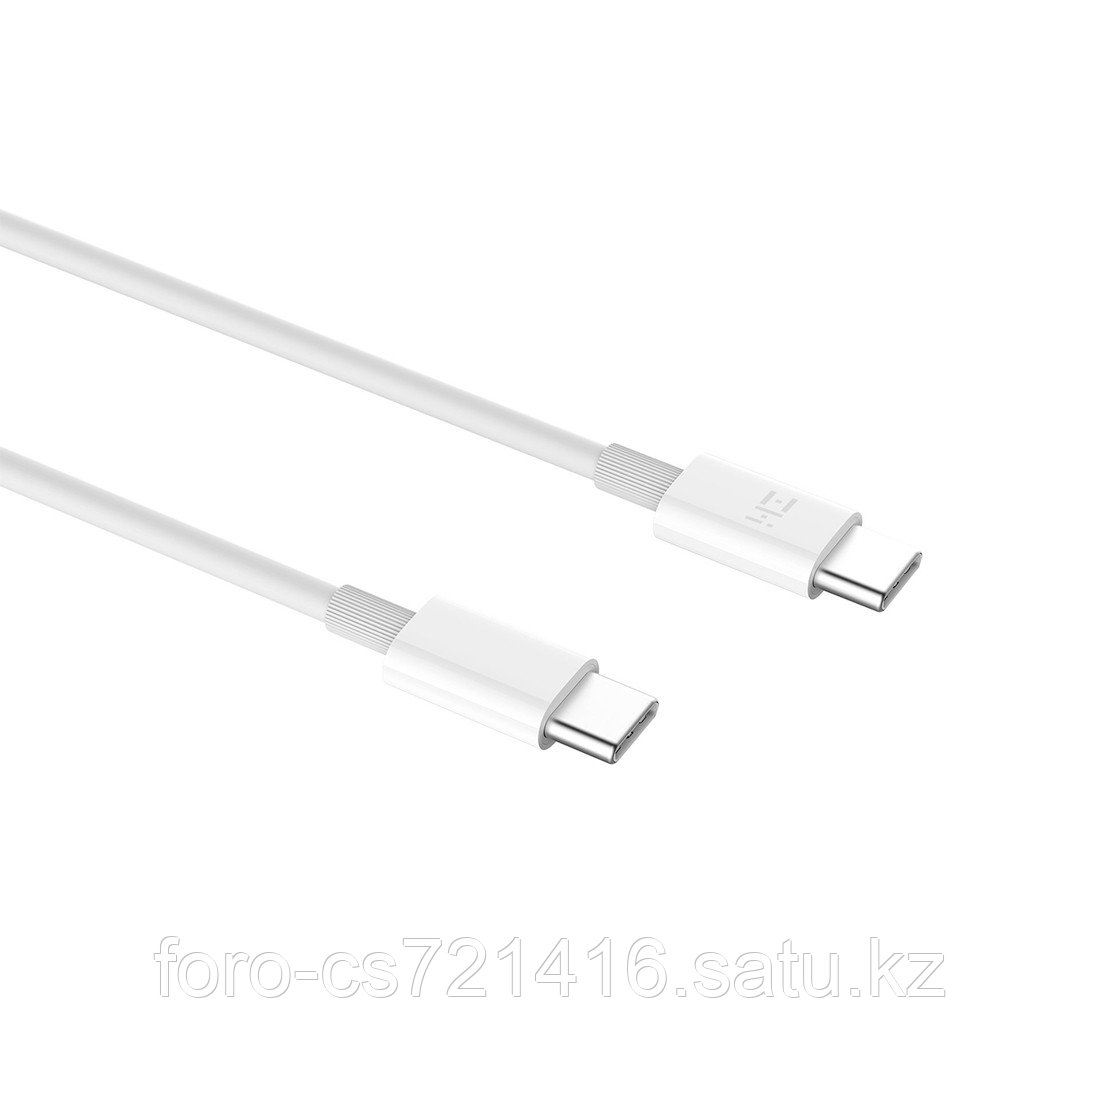 Интерфейсный кабель Xiaomi USB Type-C to Type-C 150 см, фото 1